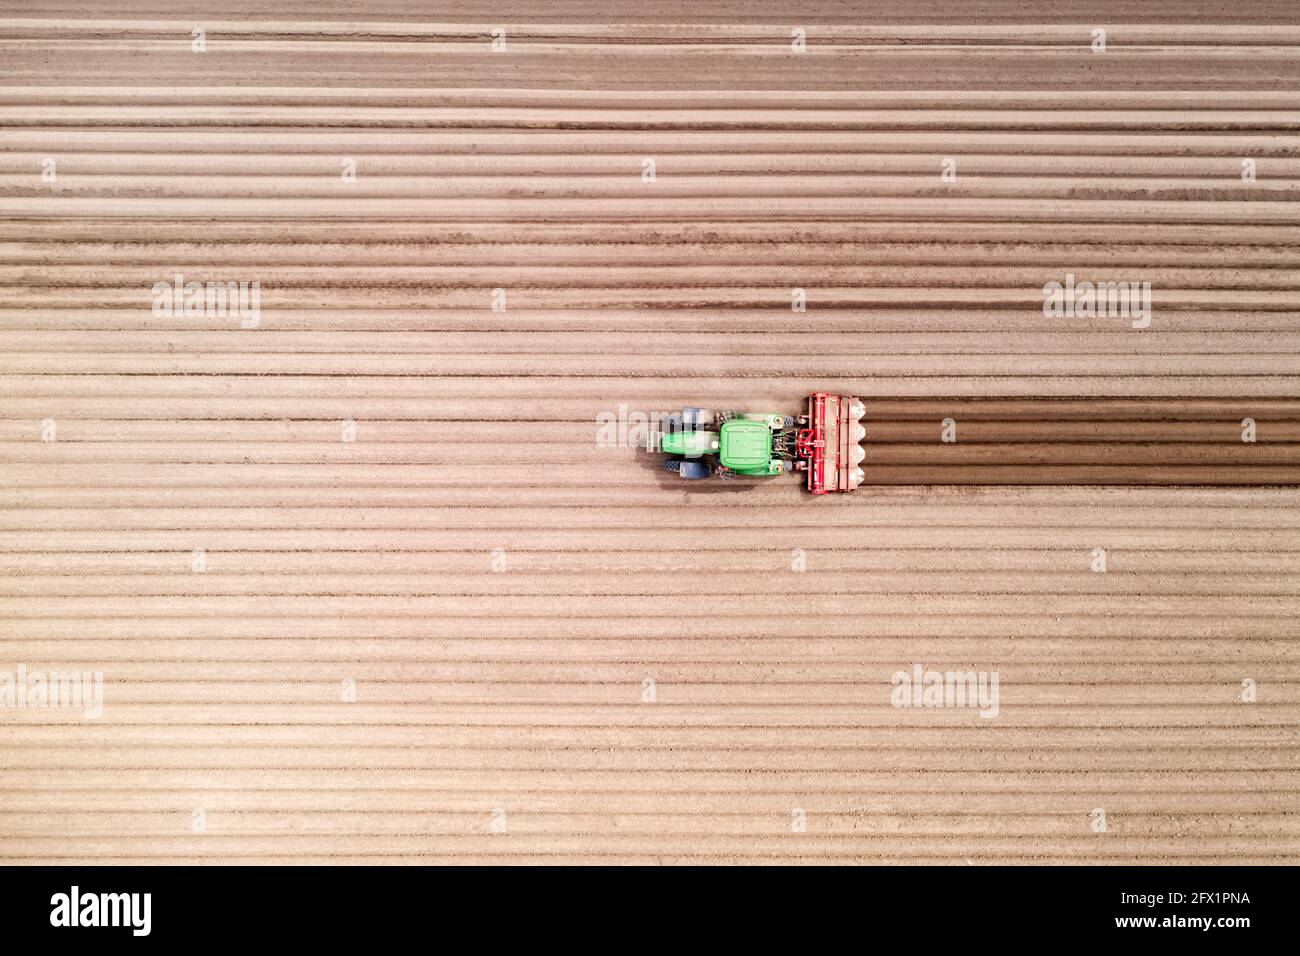 Trattore solitario su campo agricolo con file di terreno arato. Campi agricoli preparati per piantare raccolti, vista dall'alto. Concetto di agricoltura industriale. Fotografia drone Foto Stock